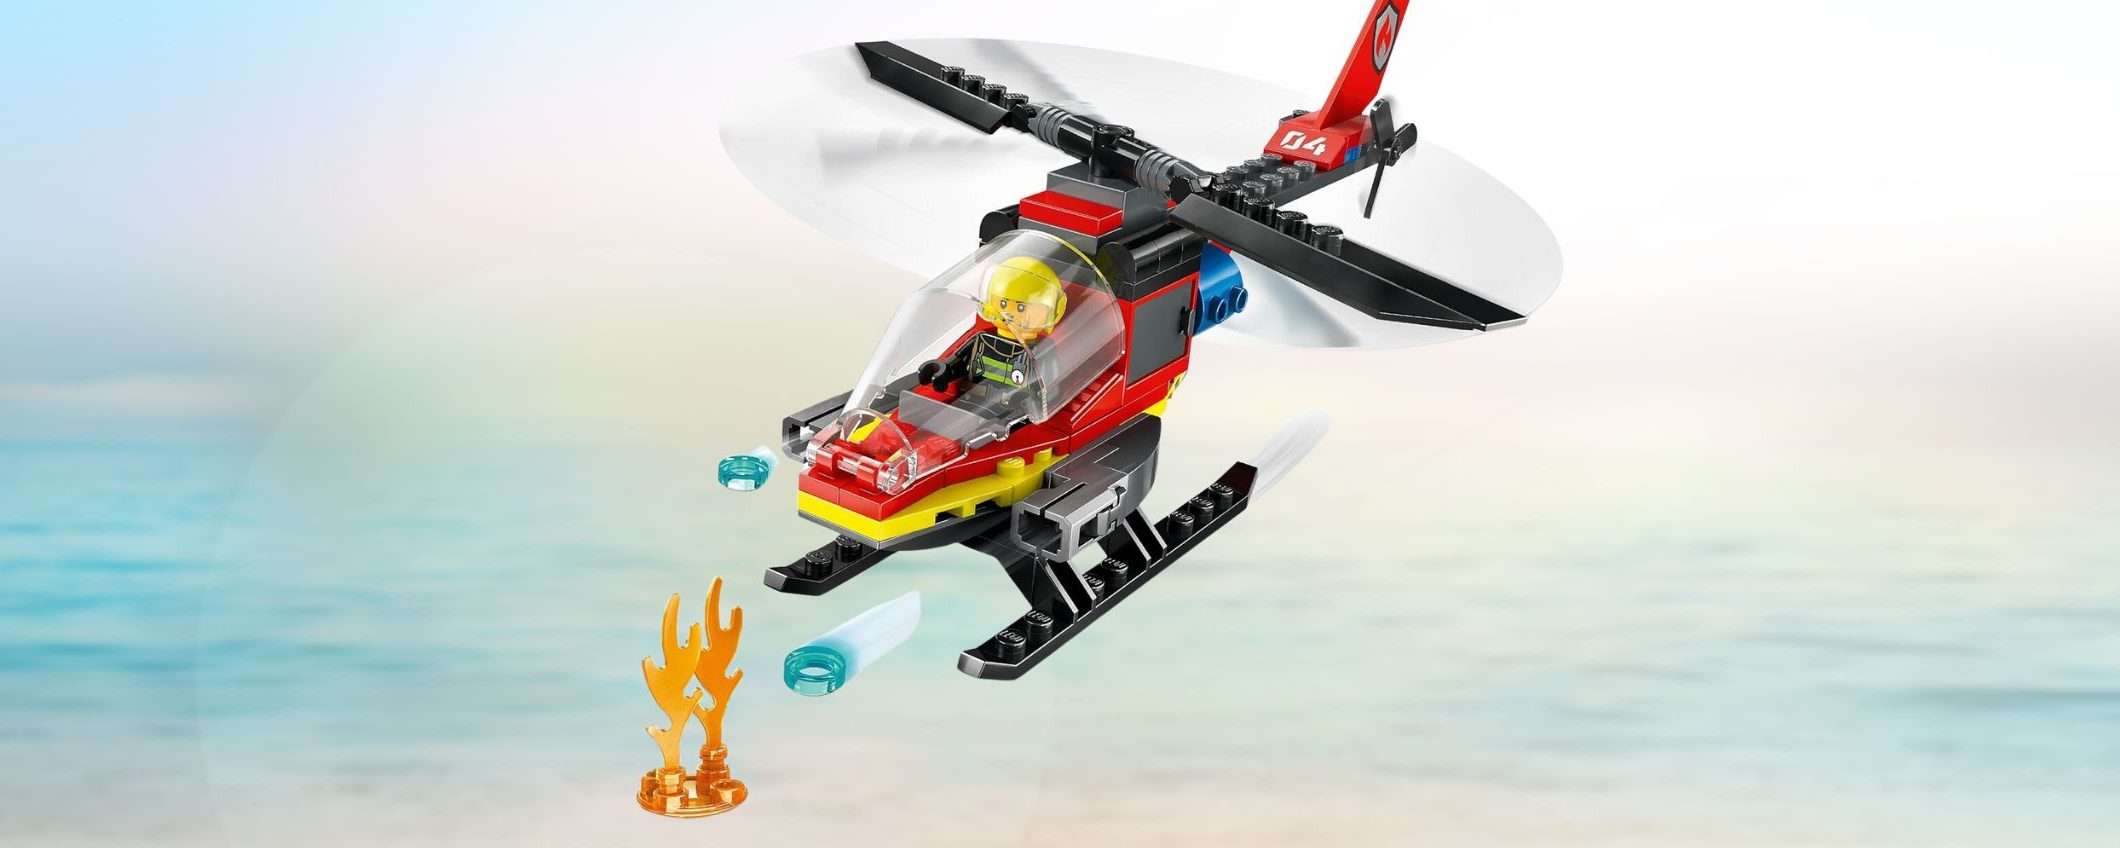 LEGO Elicottero dei Pompieri: un giocattolo divertente a meno di 10€ su Amazon